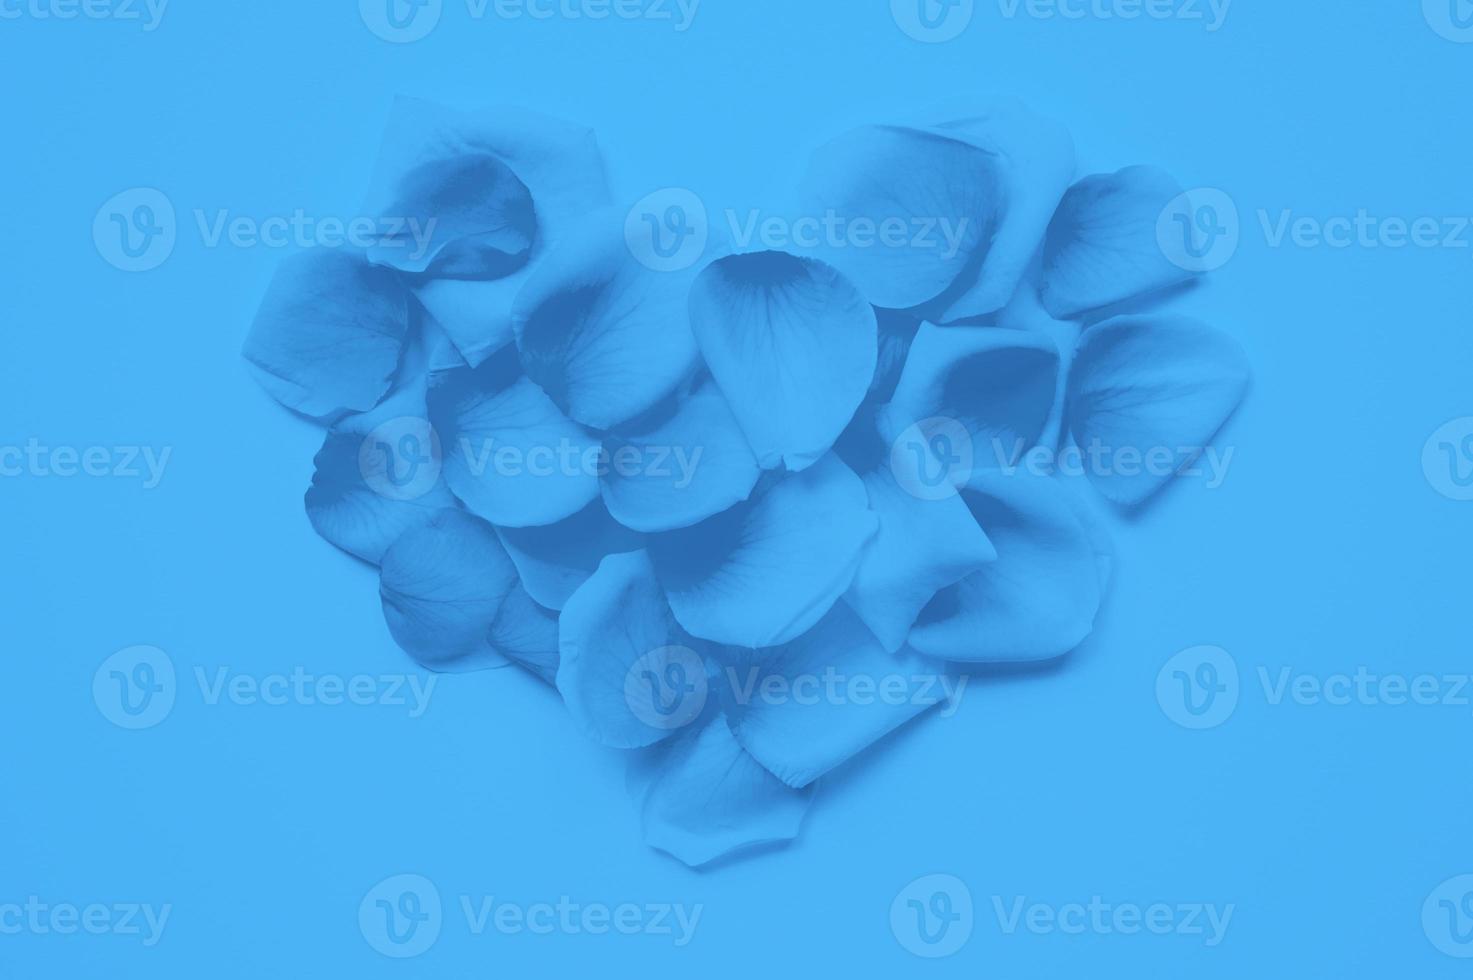 st. La Saint-Valentin. Coeur disposé à partir de pétales de roses sur fond blanc, tendance de couleur bleue classique teintée année 2020 photo